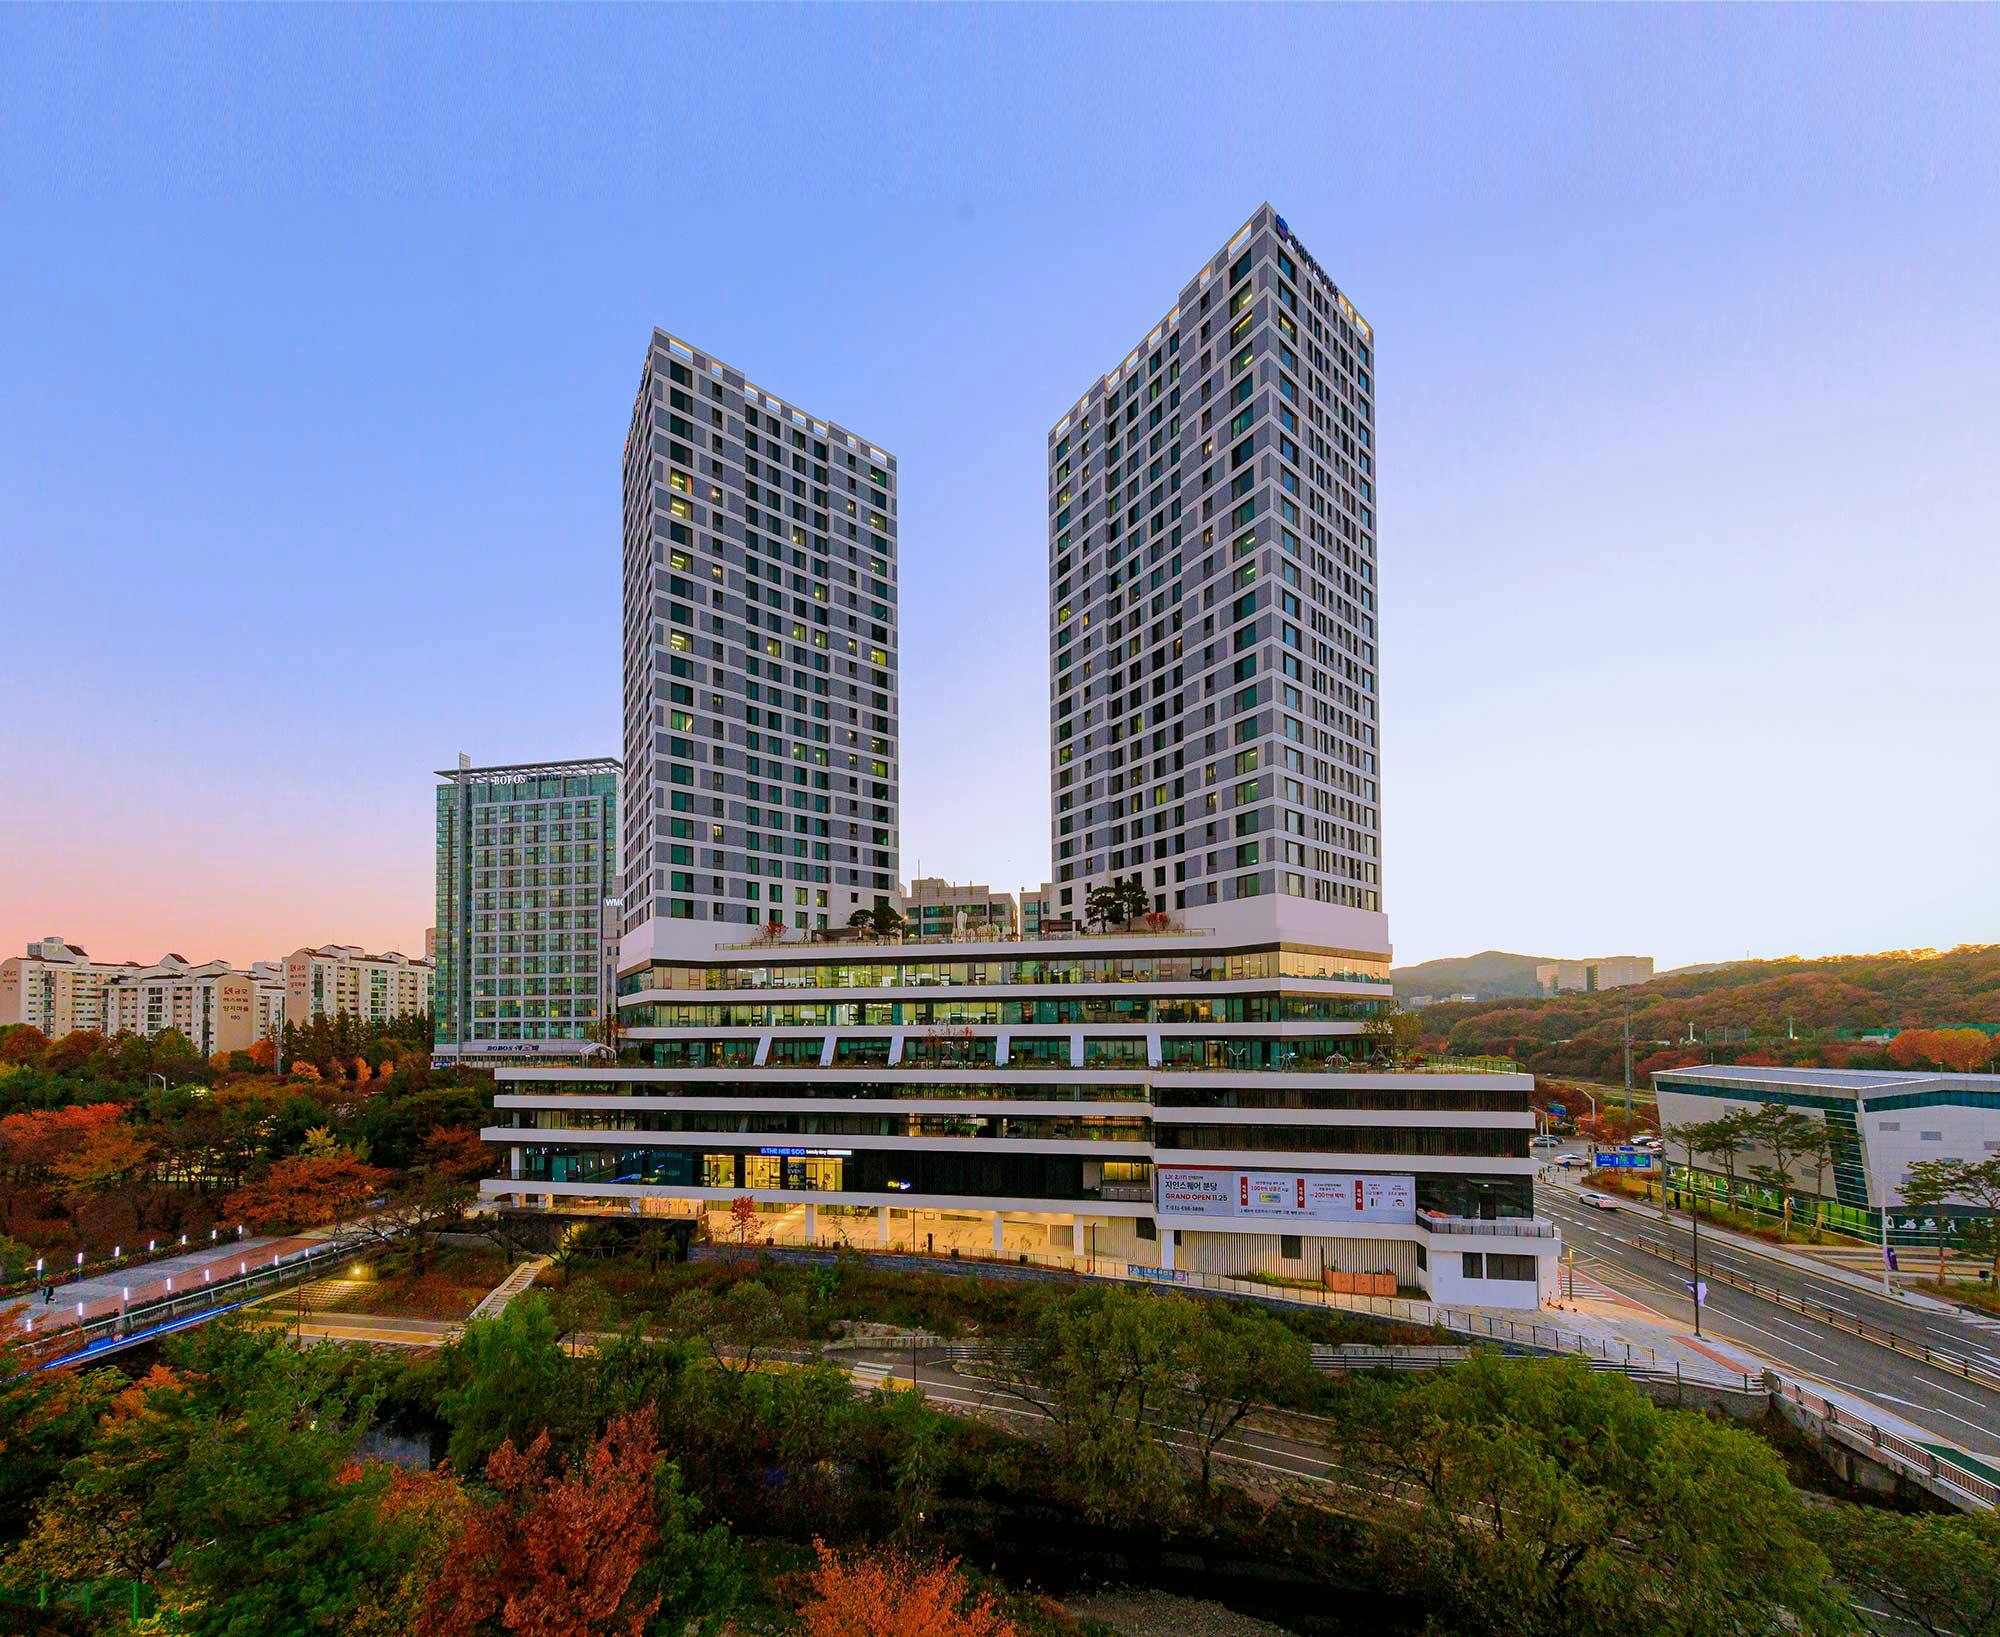 Bildnummer 33 des aktuellen Abschnitts von Korea: Ode to contemporary architecture amidst Sakura blossoms thanks to Dekton von Cosentino Österreich